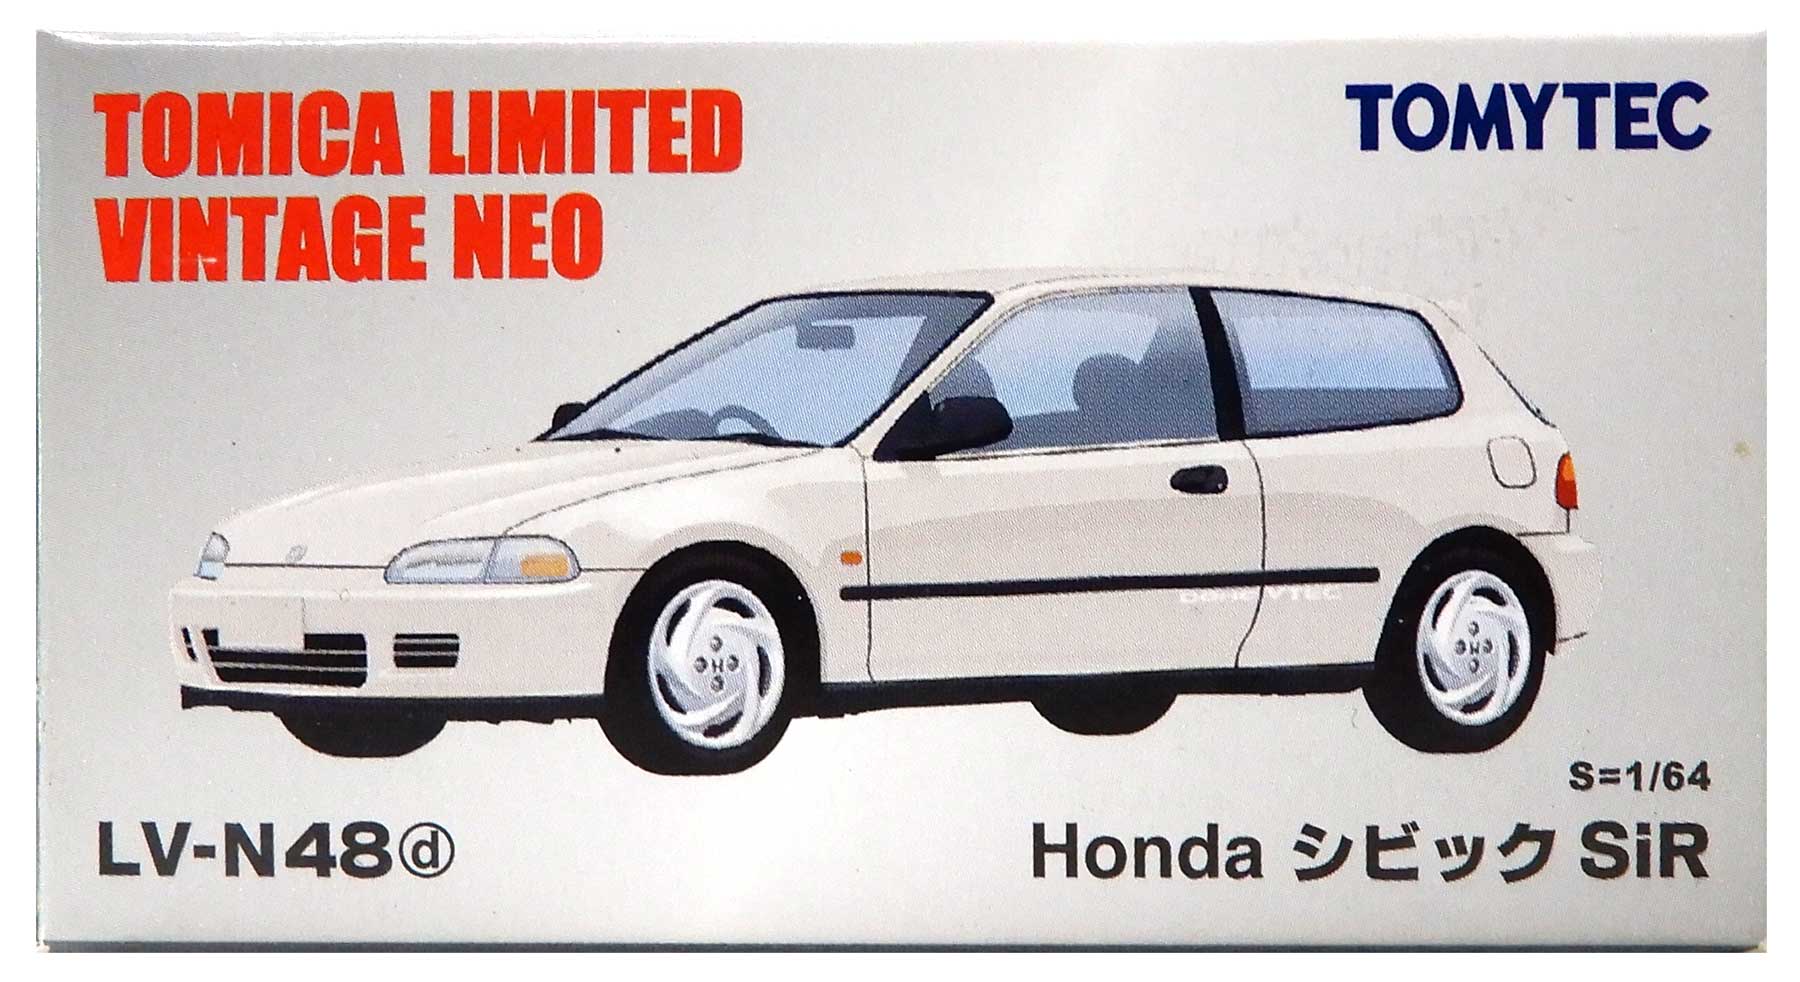 公式]TOY(トミカリミテッドヴィンテージNEO LV-N48d Honda シビックSiR